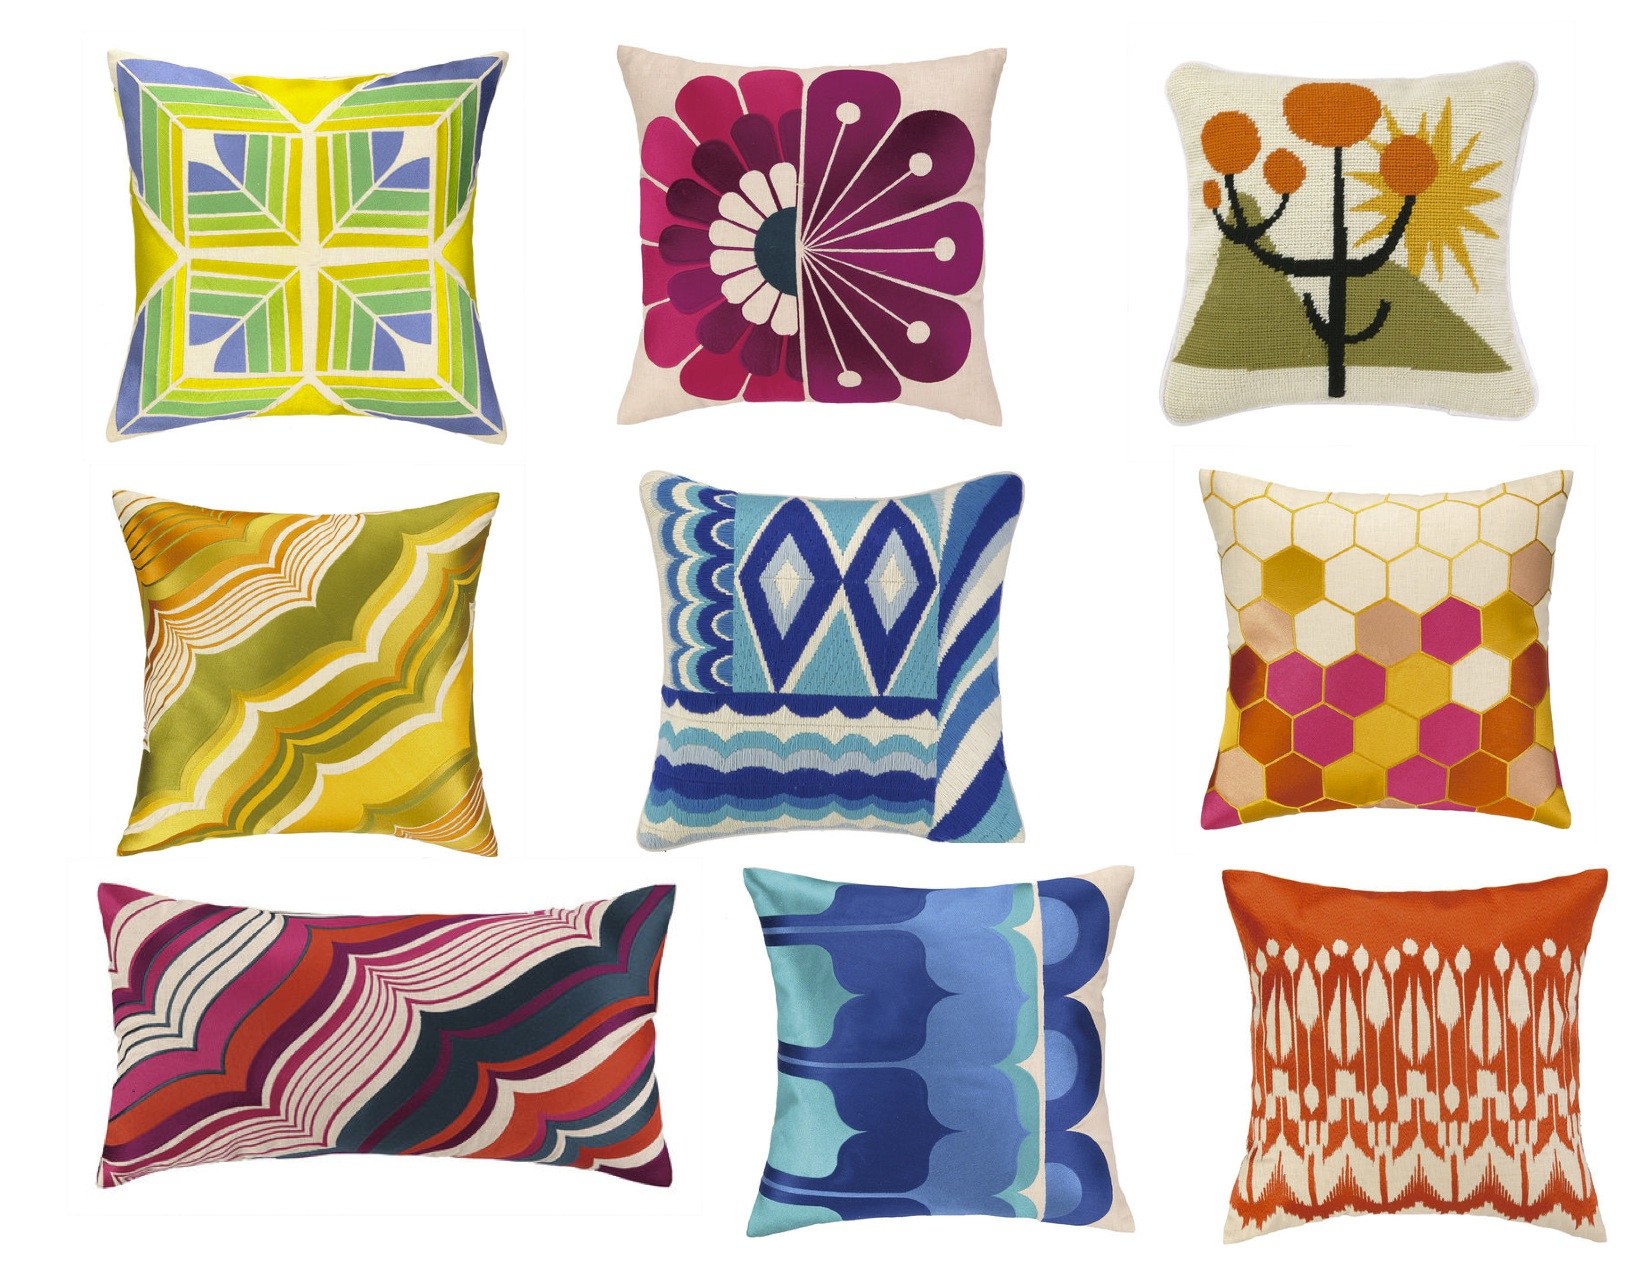 274-pillow-design-sample.jpg